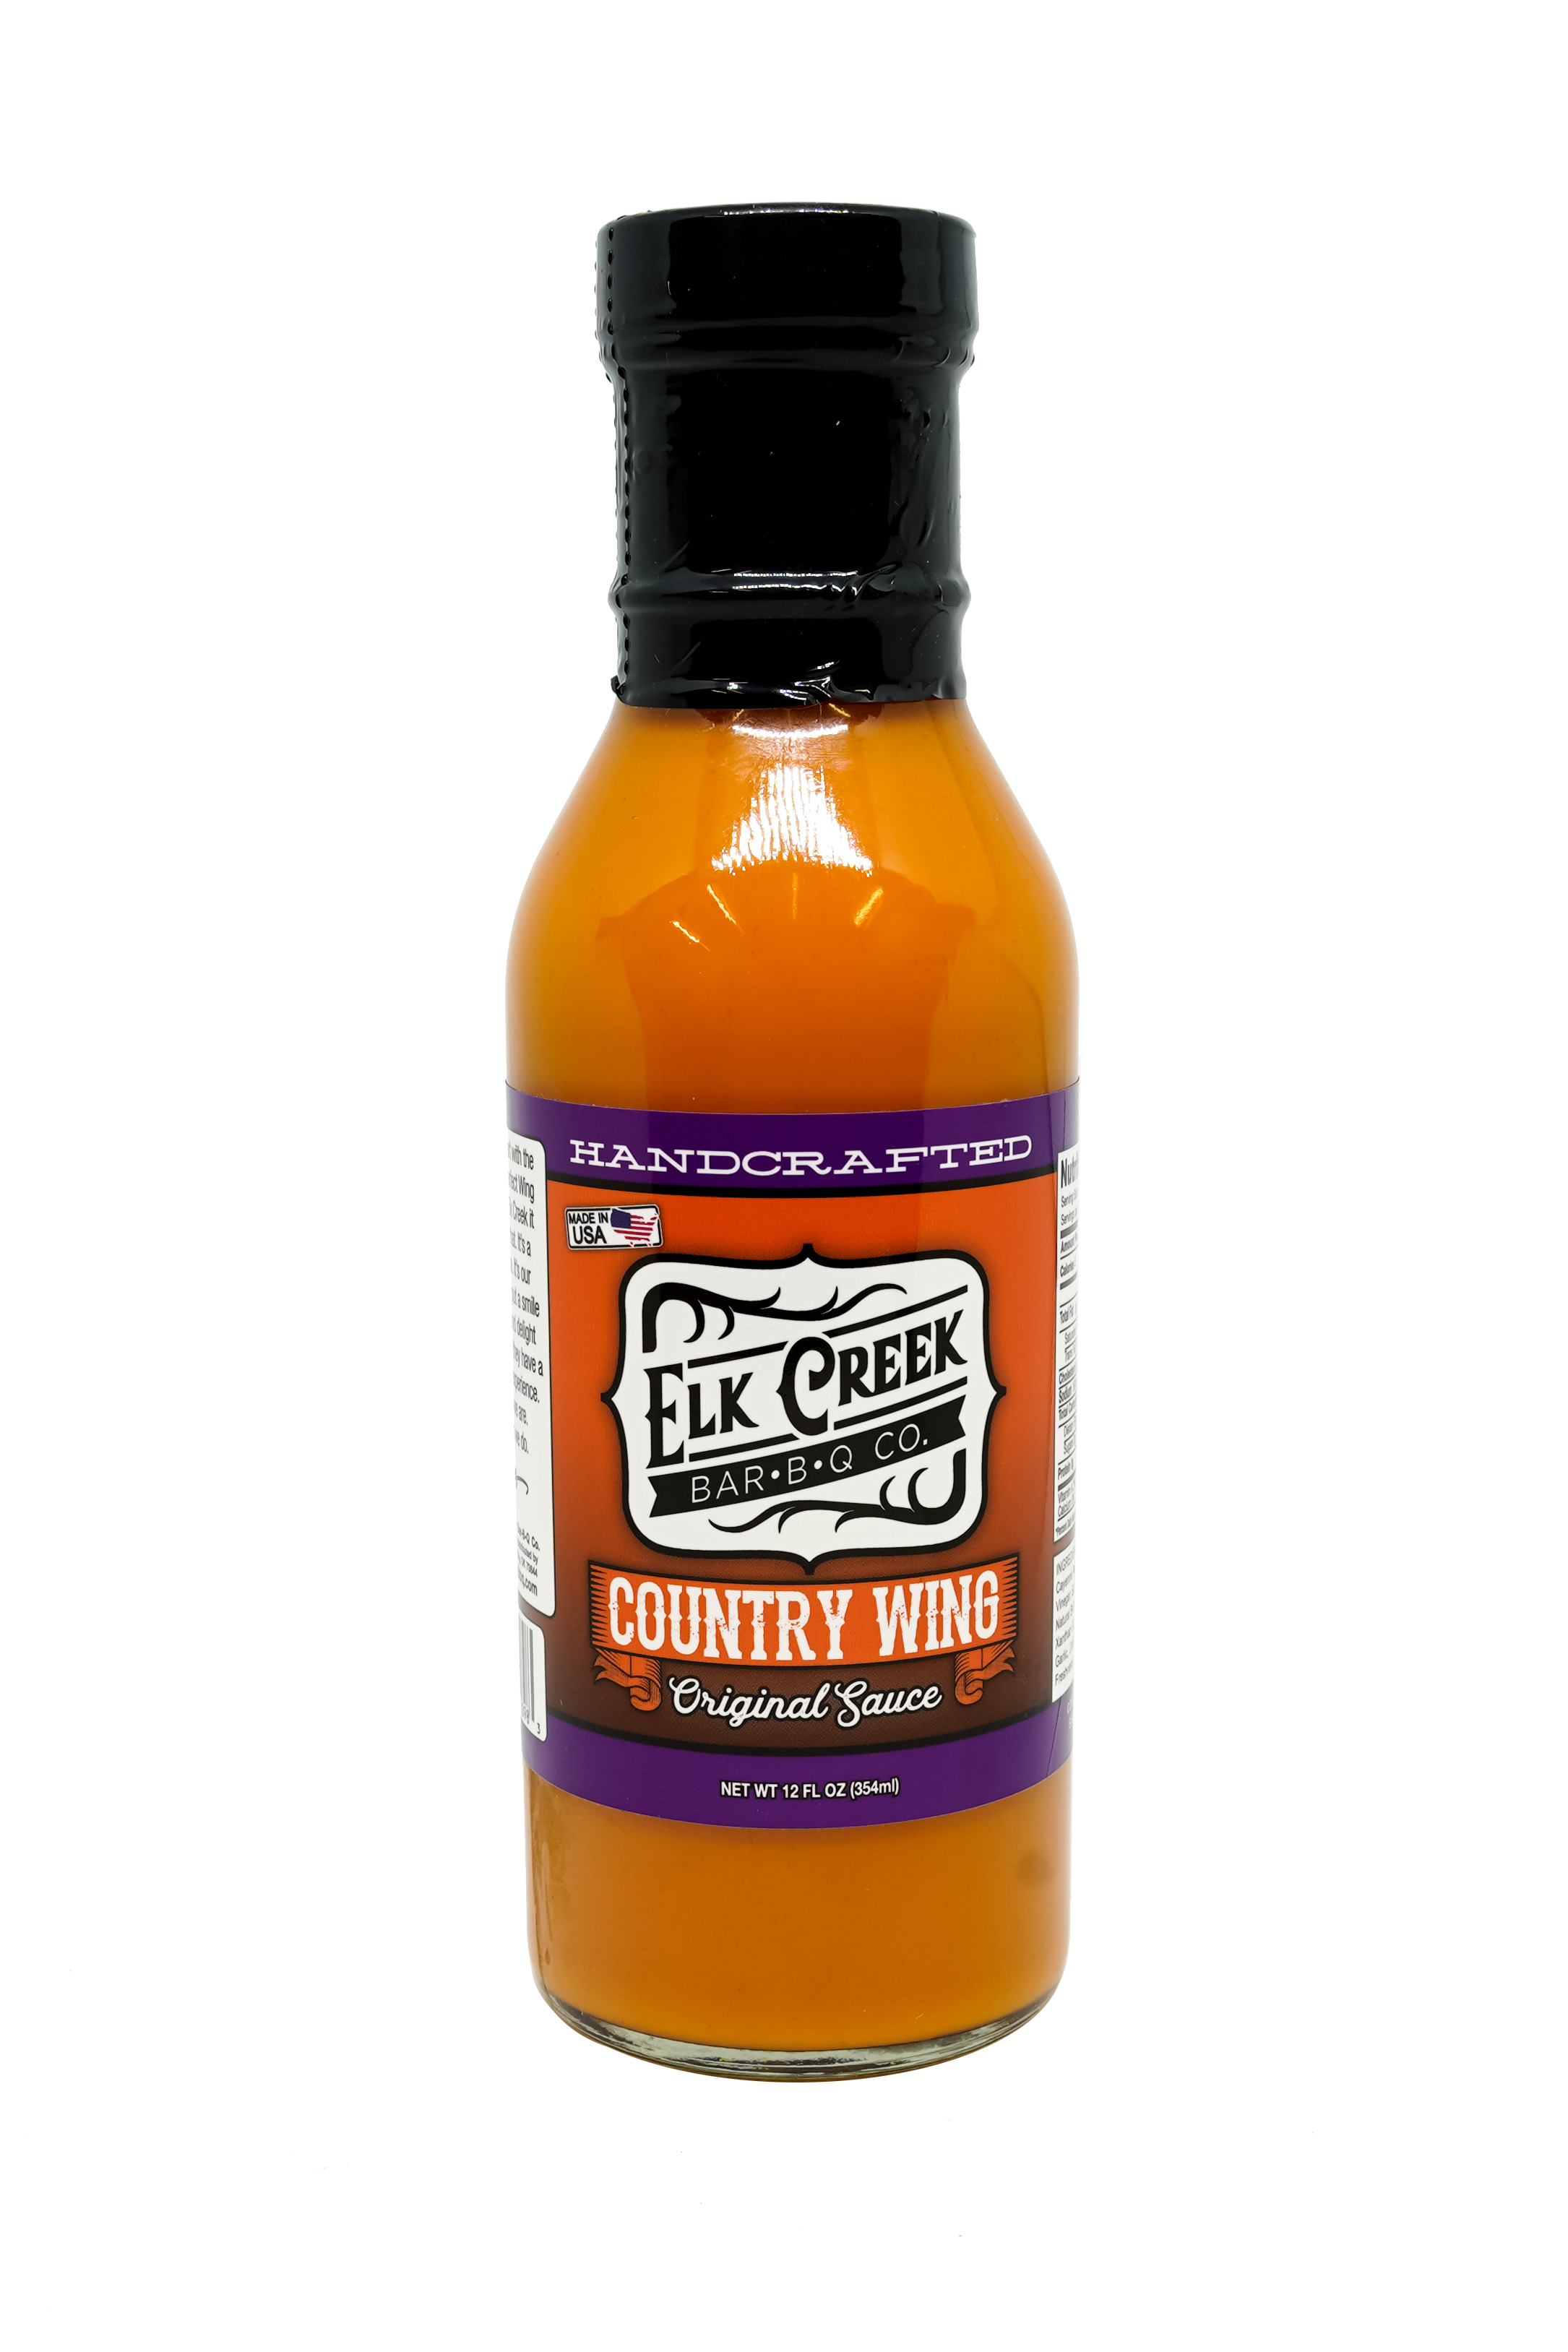 Elk Creek Country Wing Original Sauce